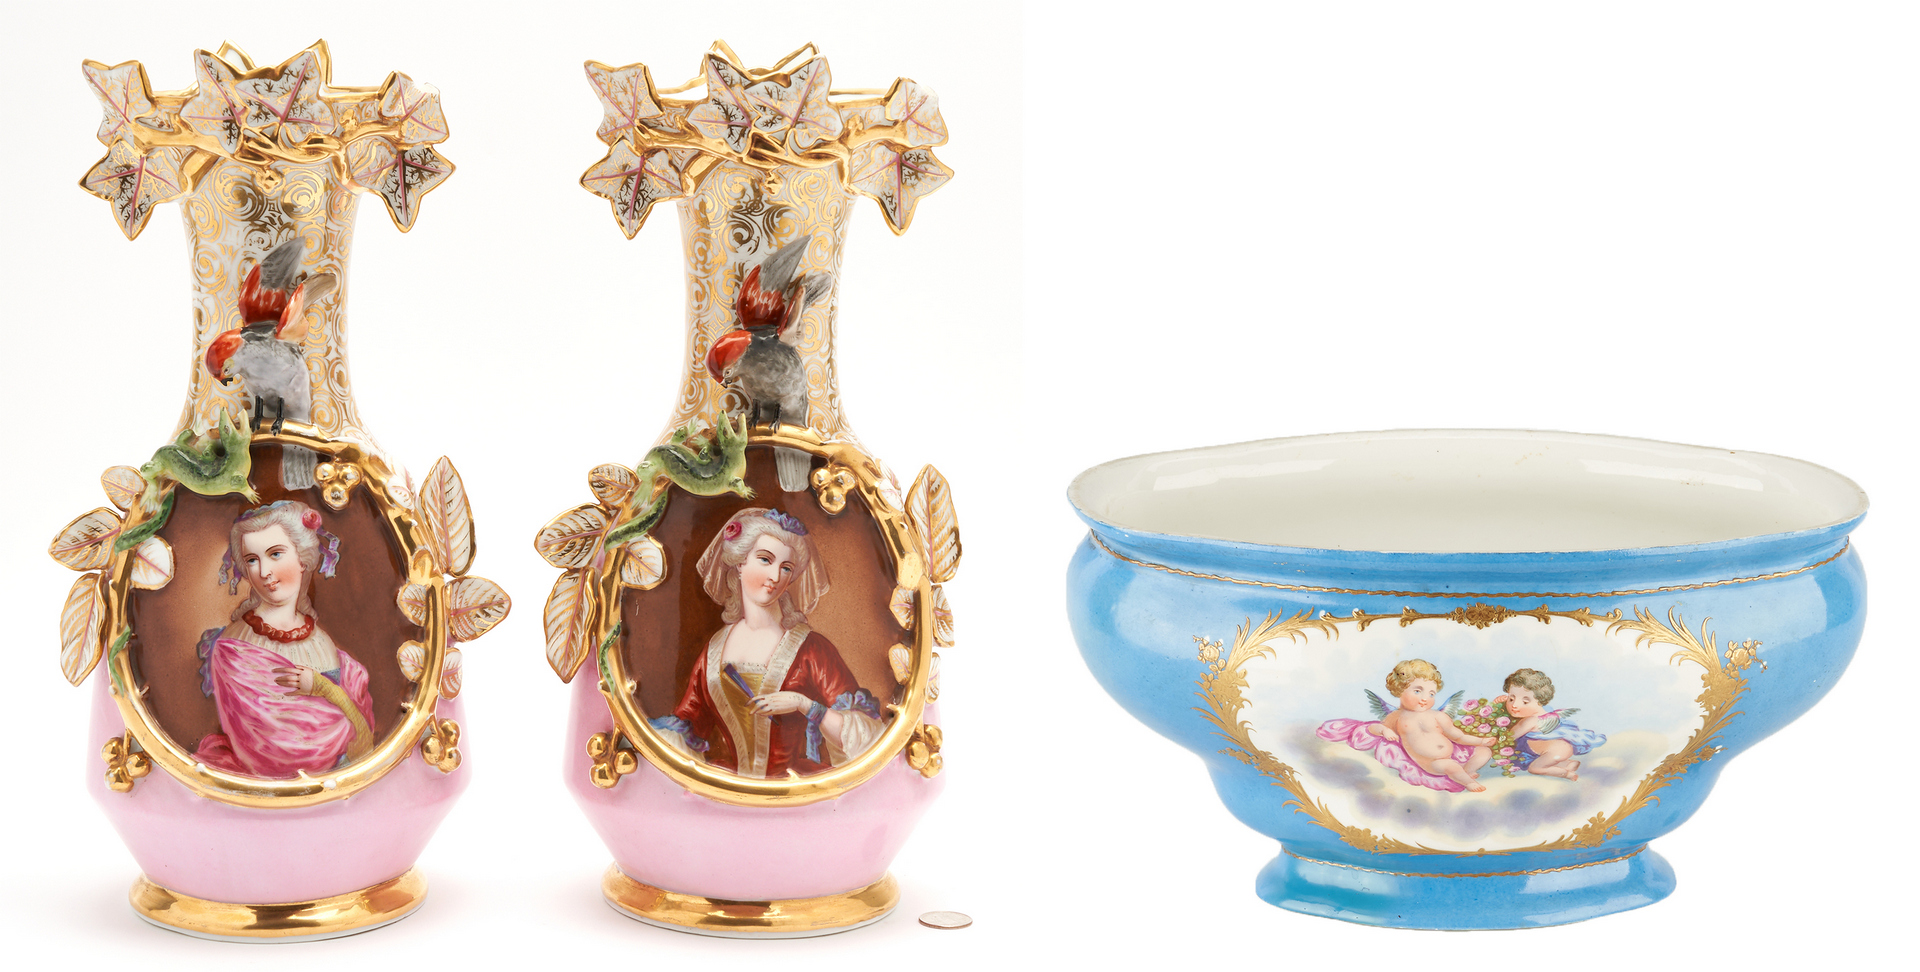 Lot 328: 3 Porcelain Items, Portrait Vases and Center Bowl